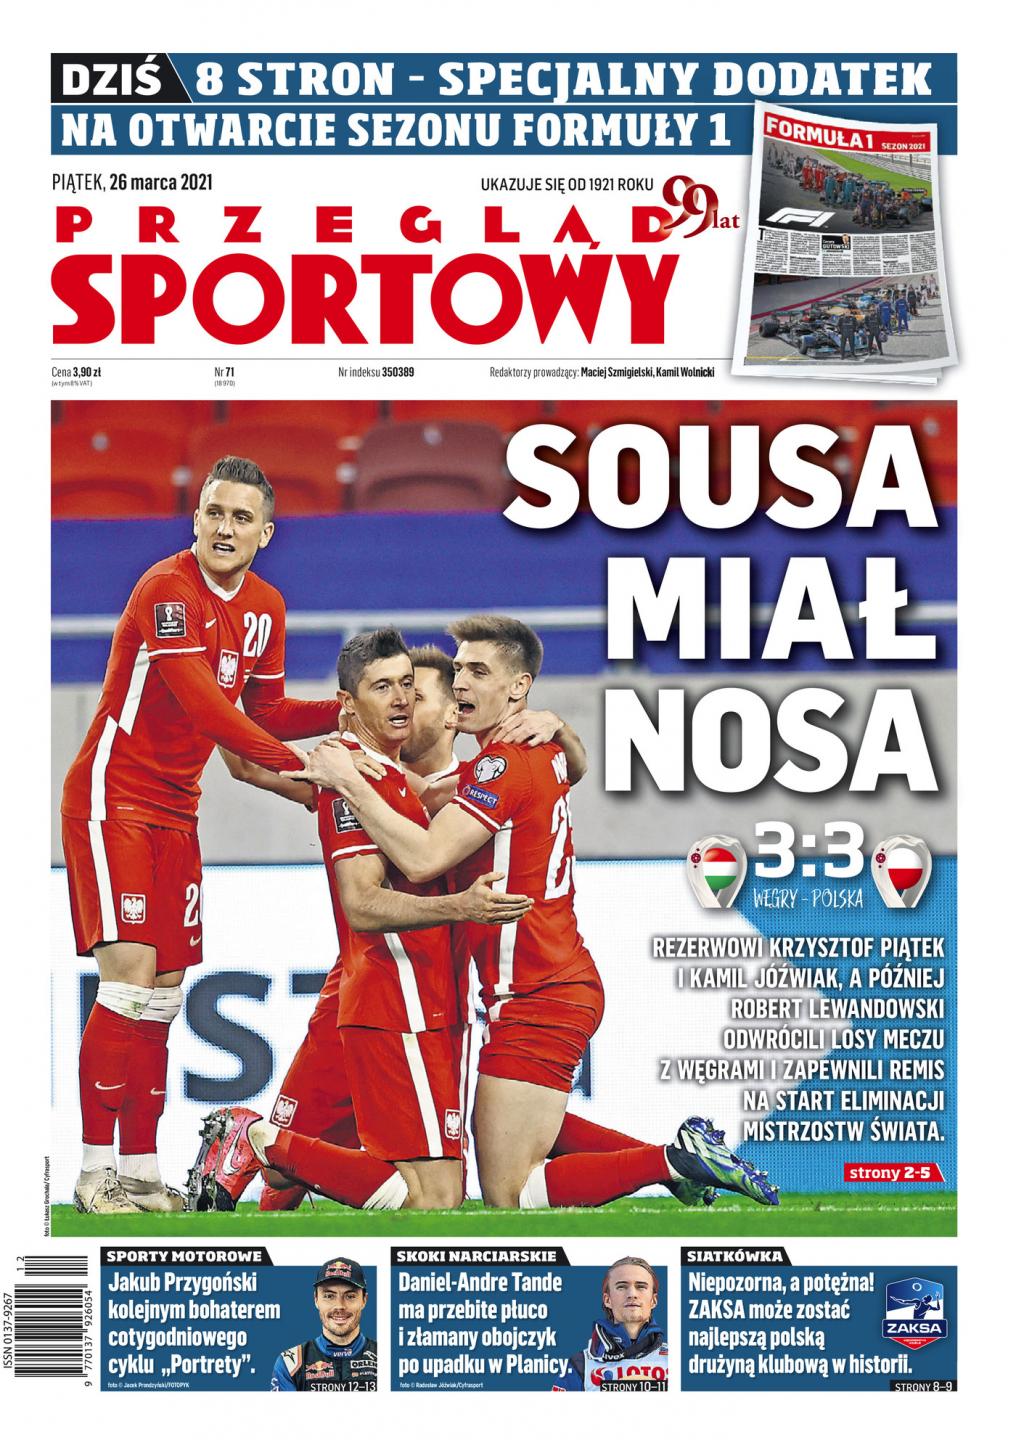 Przegląd Sportowy po Węgry - Polska 3:3 (25.03.2021)